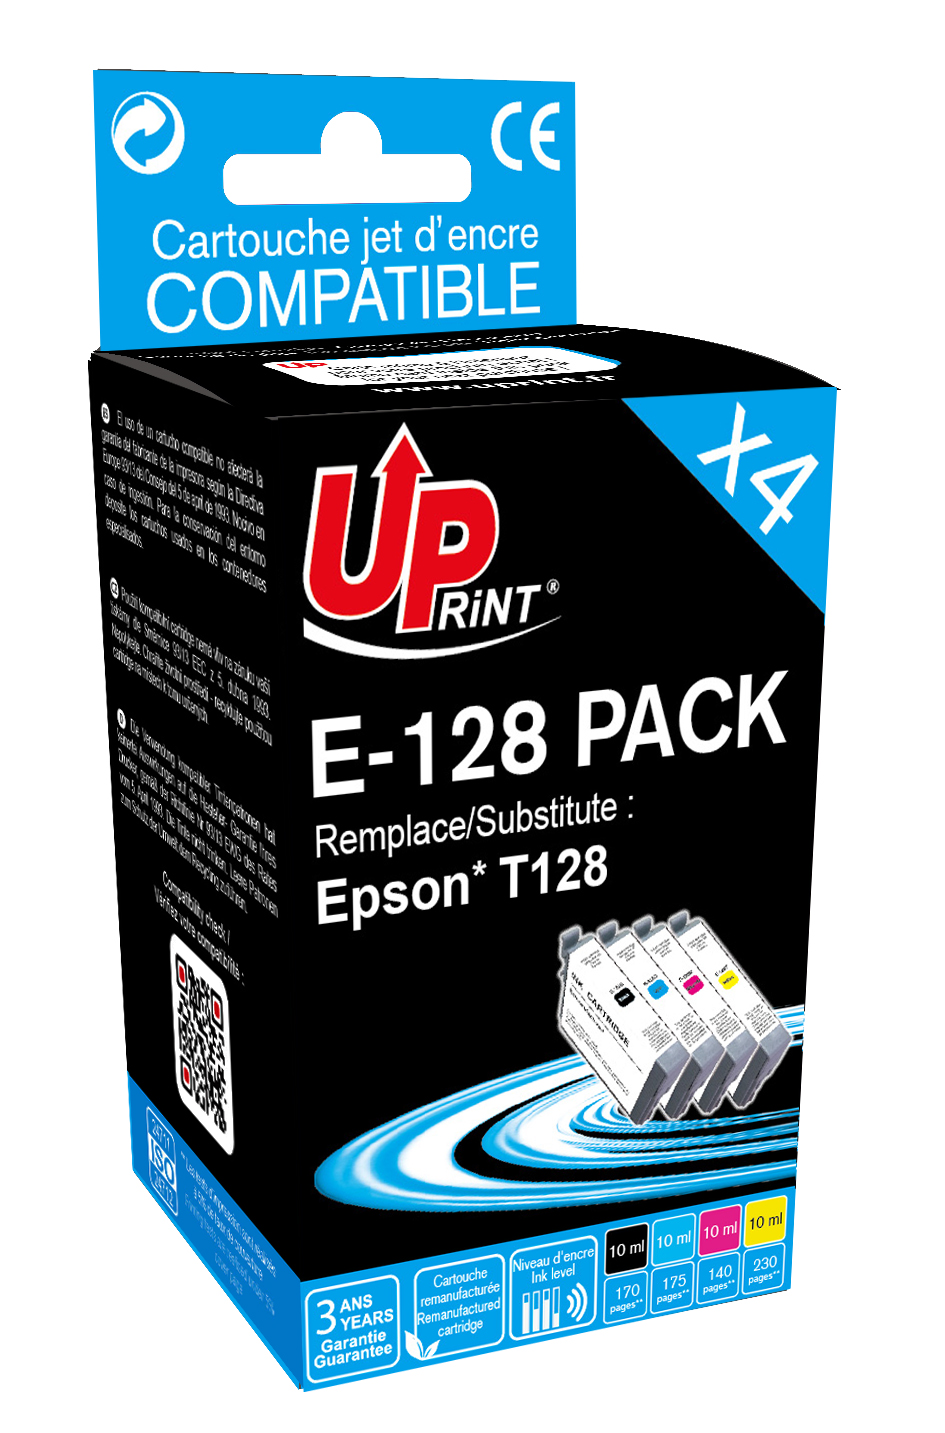 Cartouche compatible Epson 502XL Jumelles - pack de 4 - noir, cyan